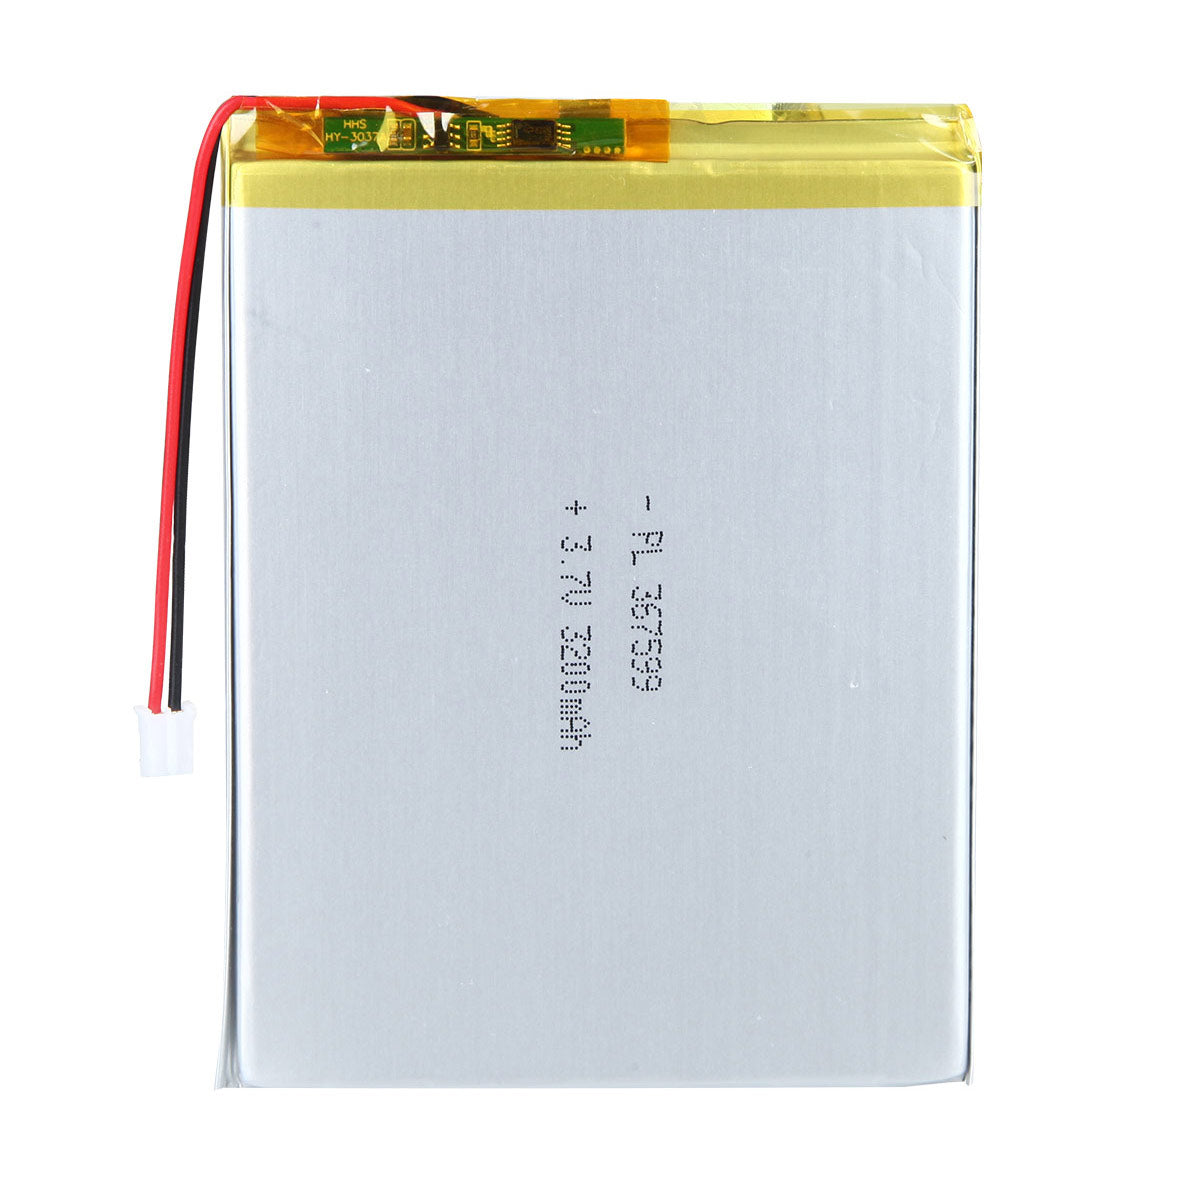 3.7V 3200mAh 367599 Batterie lithium-ion polymère rechargeable Longueur 101mm